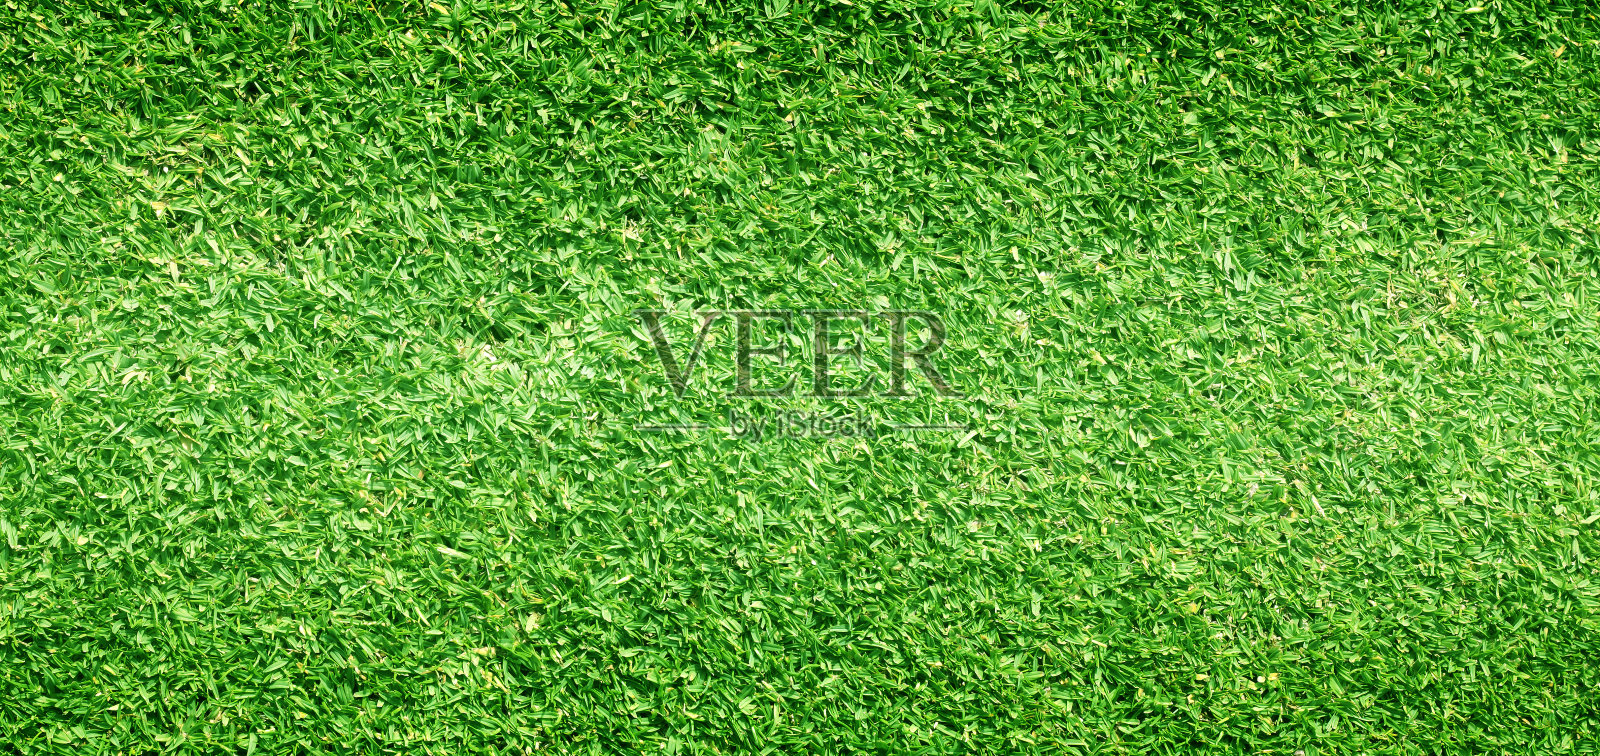 草地背景高尔夫球场绿色草坪设计元素图片